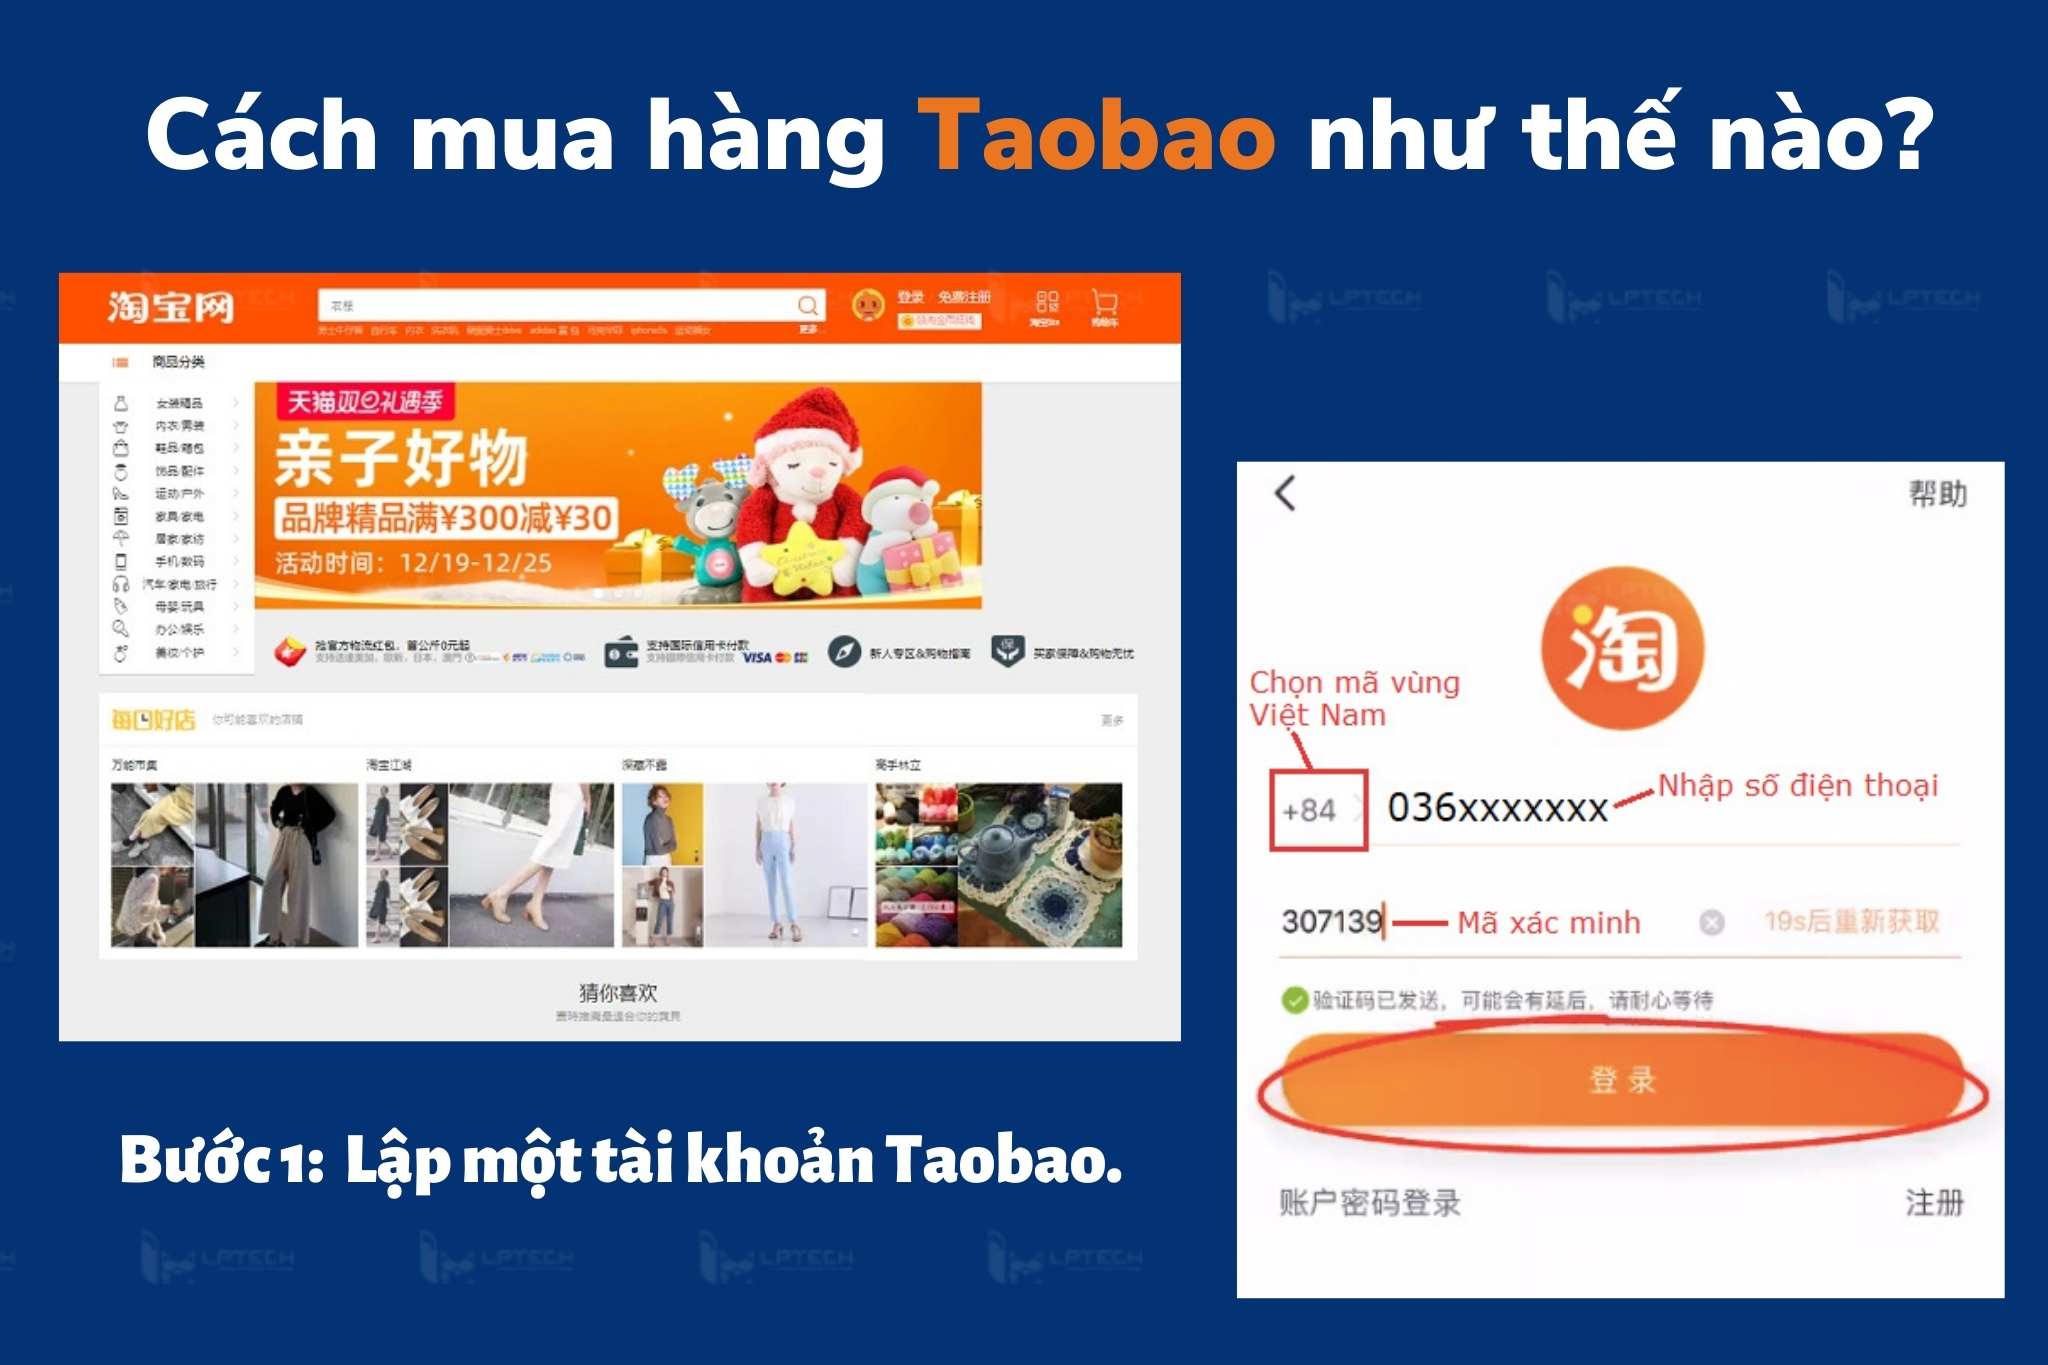 Cách mua hàng Taobao như thế nào?